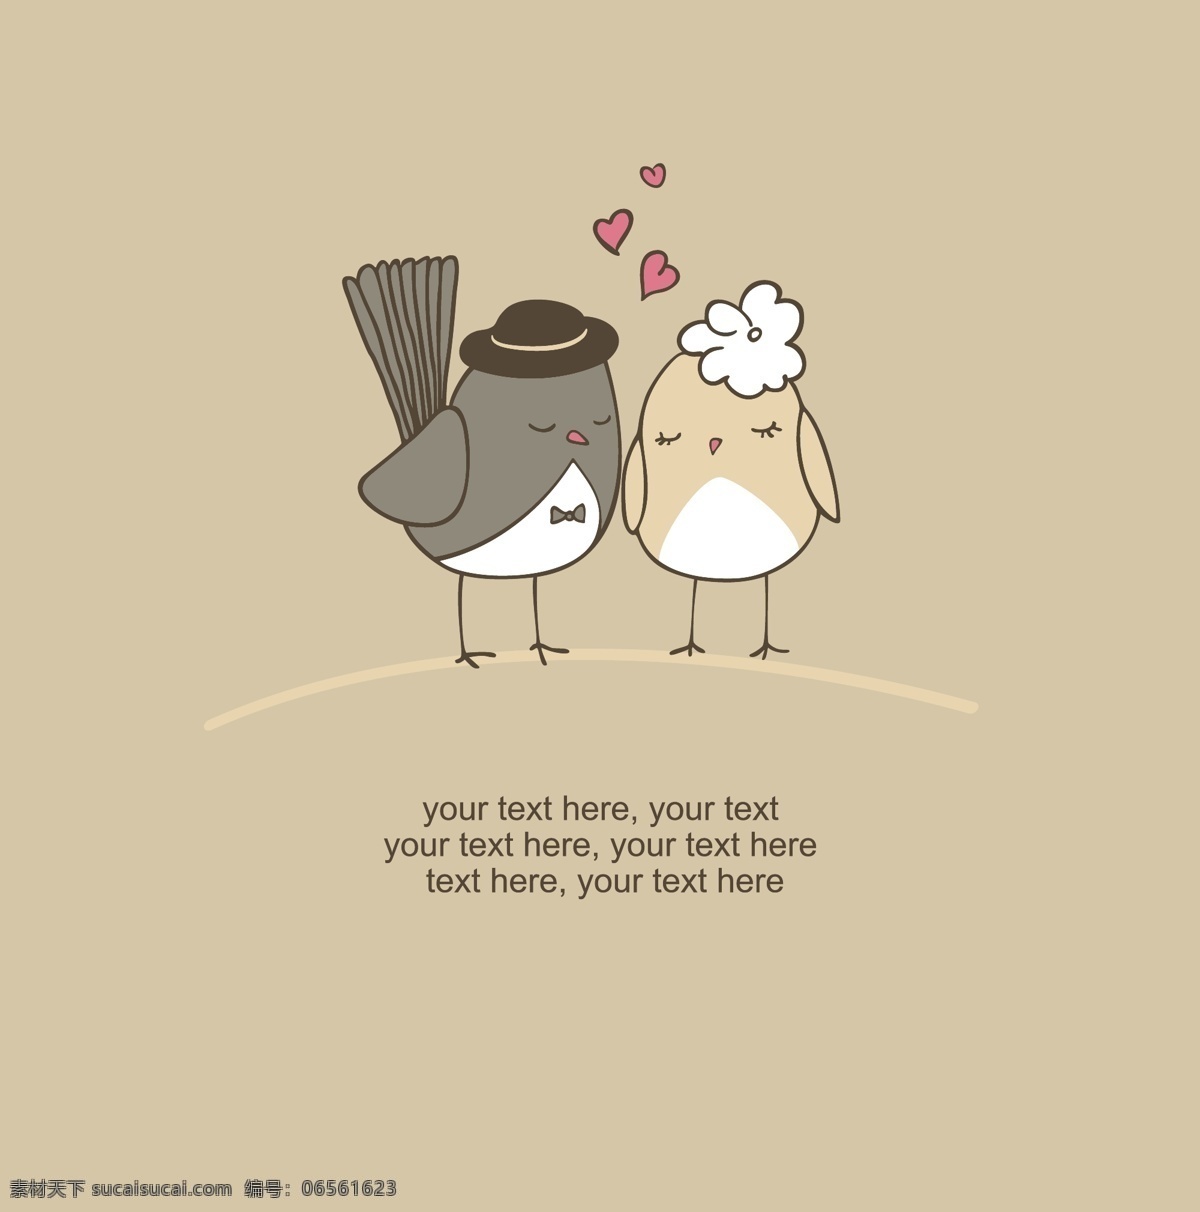 两 只 卡通 可爱 小鸟 插画 爱情 动物 情侣